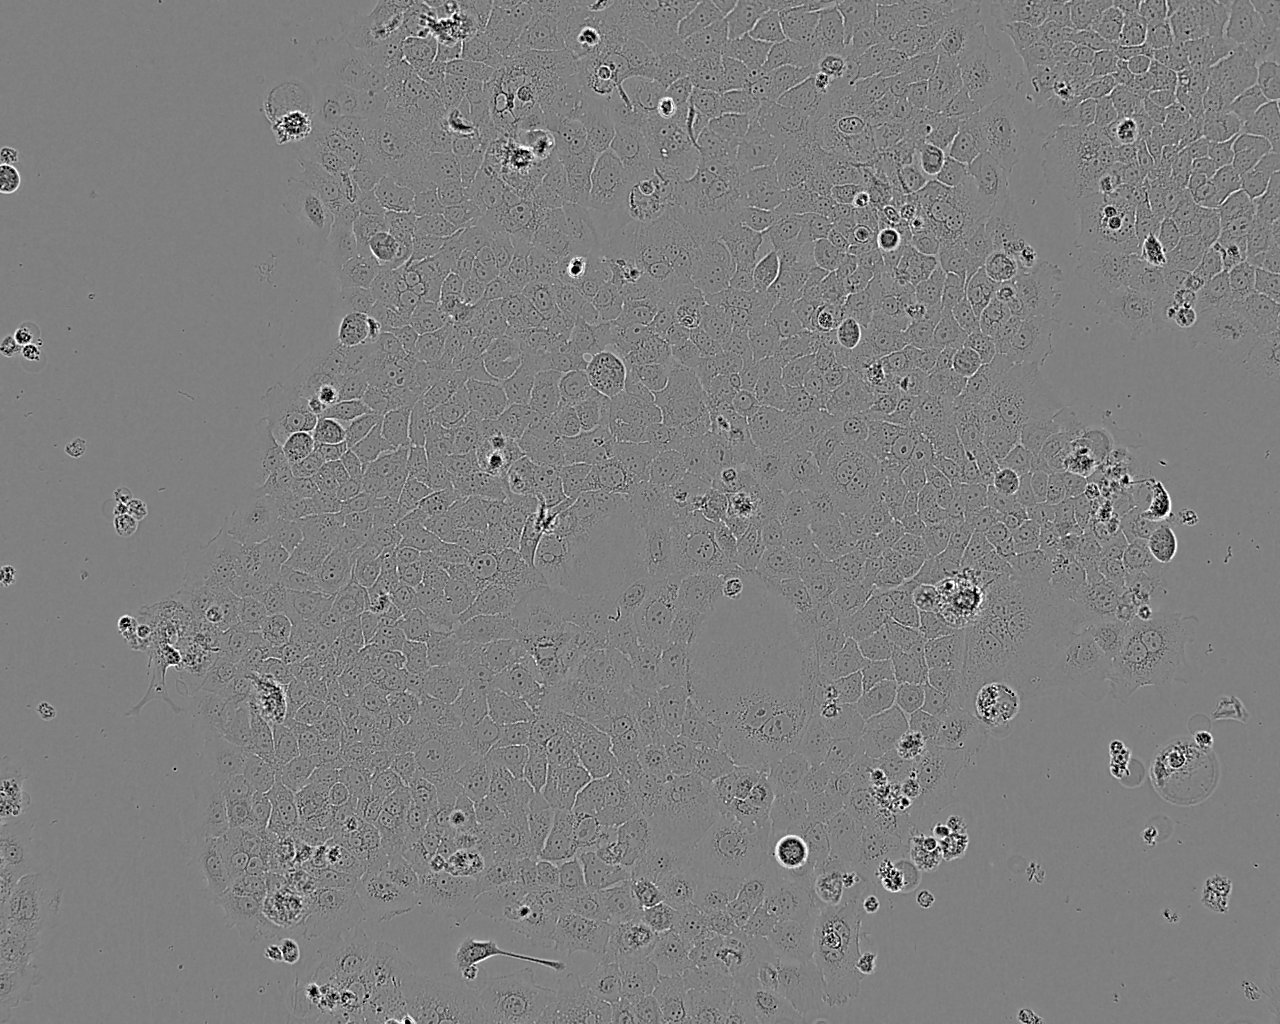 MFC epithelioid cells小鼠胃癌细胞系,MFC epithelioid cells